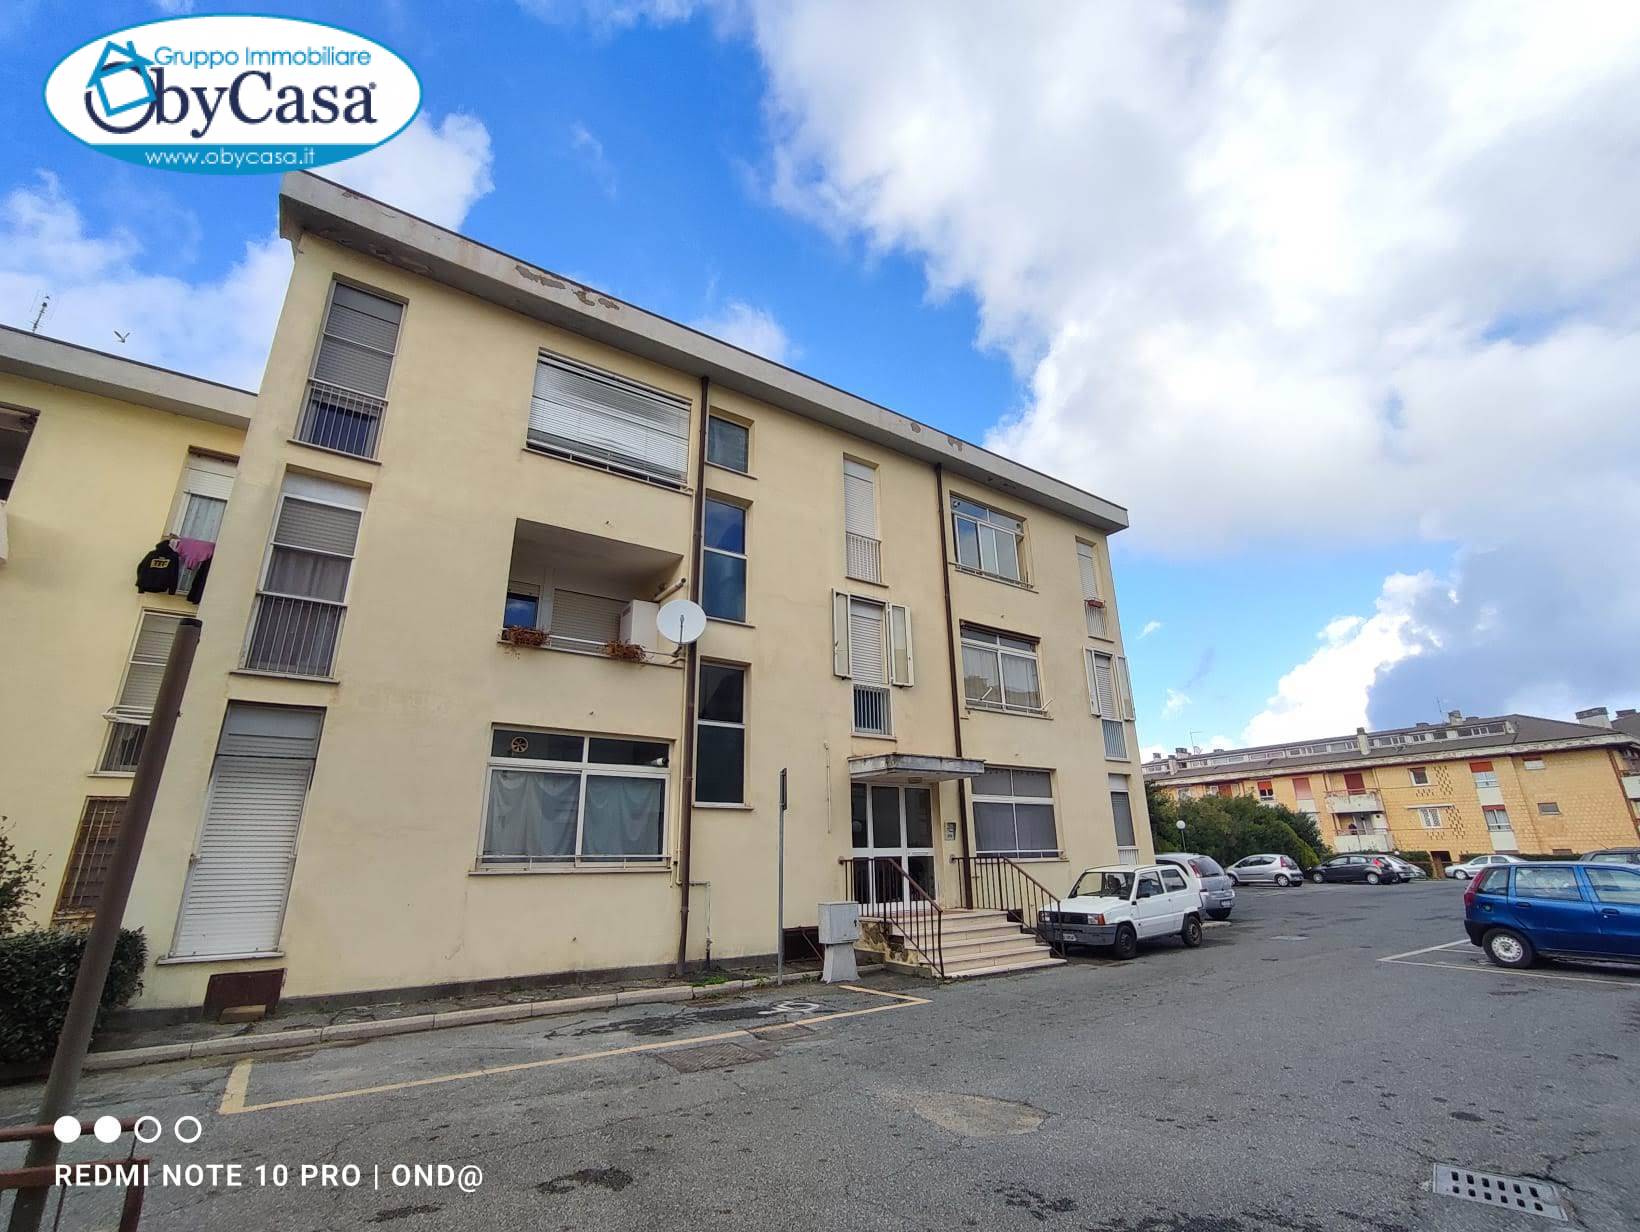 Appartamento in vendita a Bracciano, 4 locali, zona Zona: Cartiere, prezzo € 135.000 | CambioCasa.it